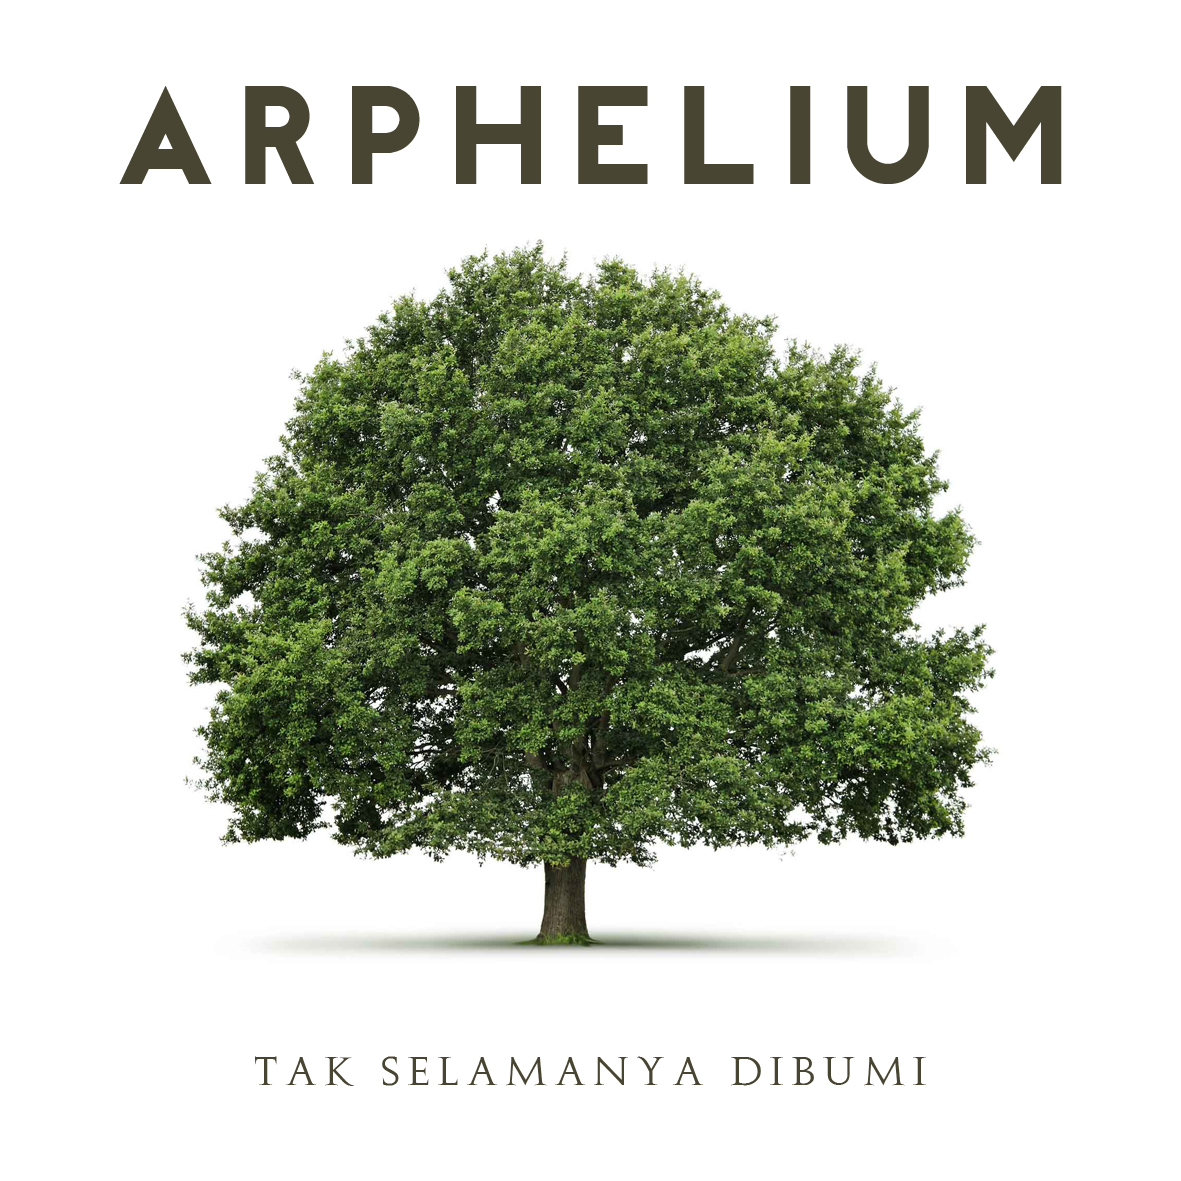 Arphelium